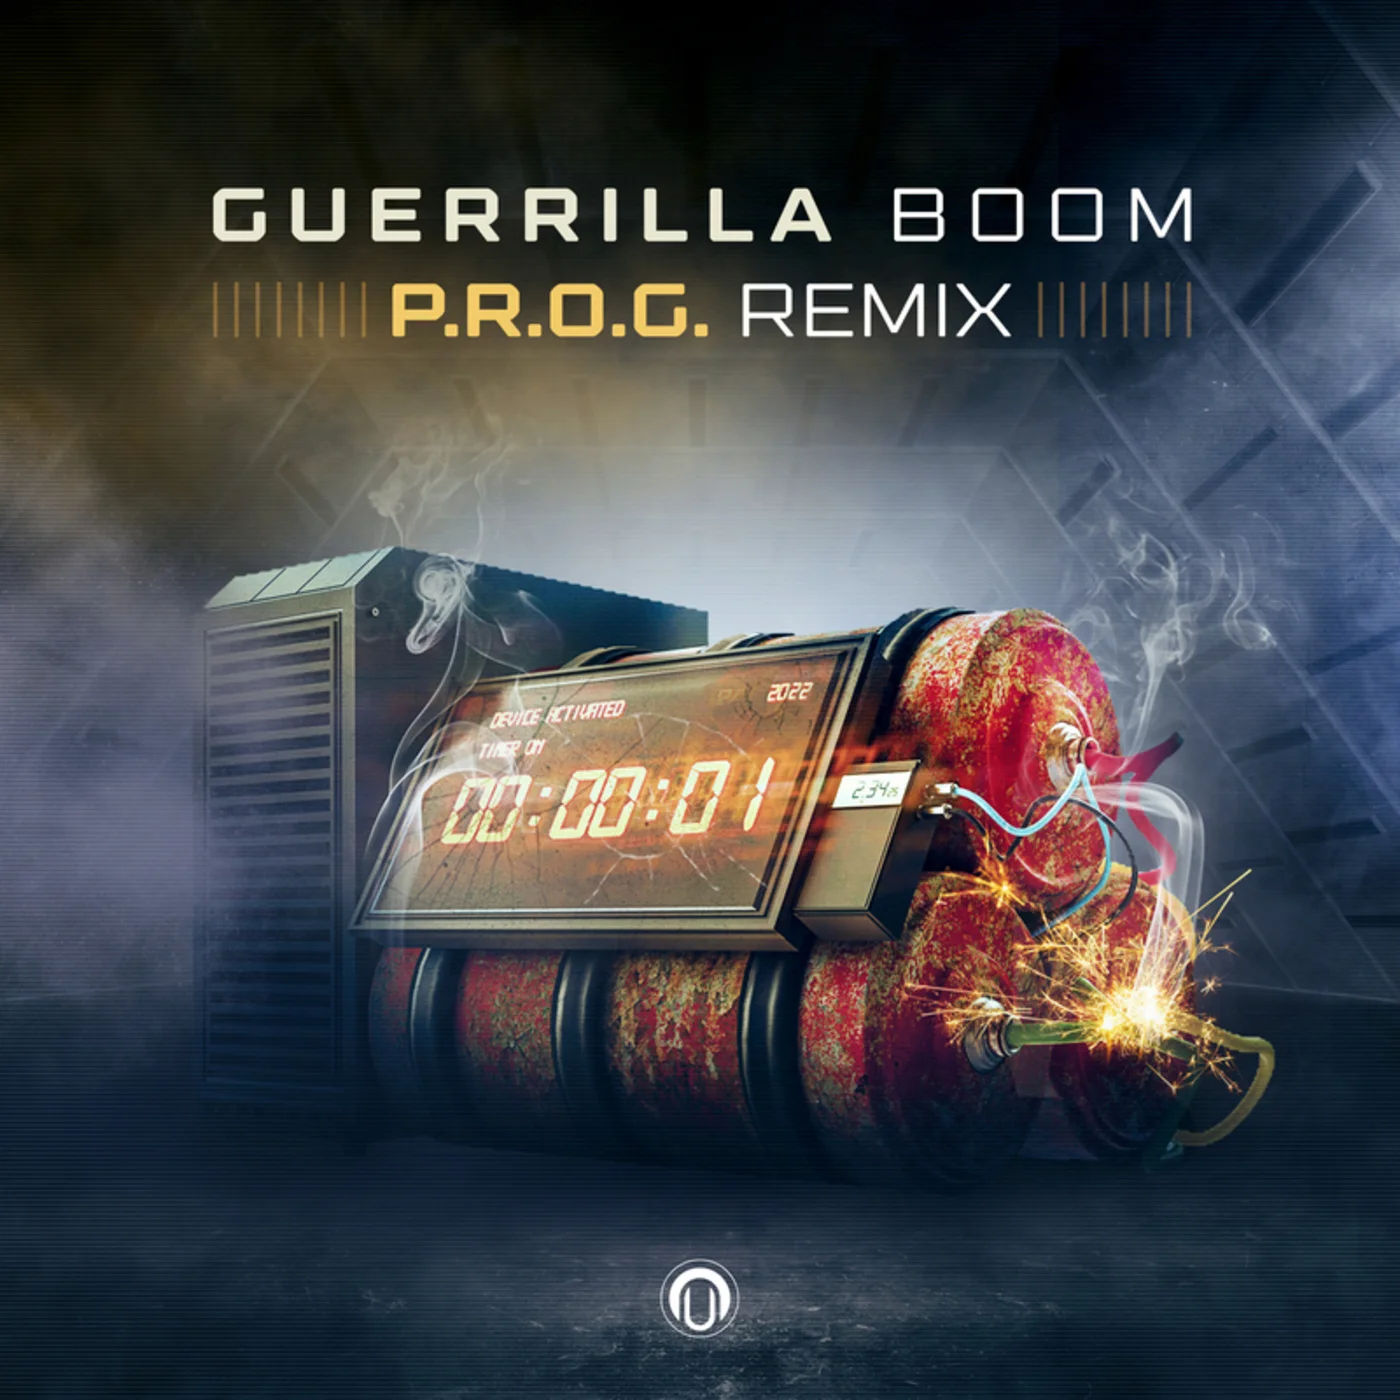 Guerrilla - Boom (P.r.o.g. Remix)